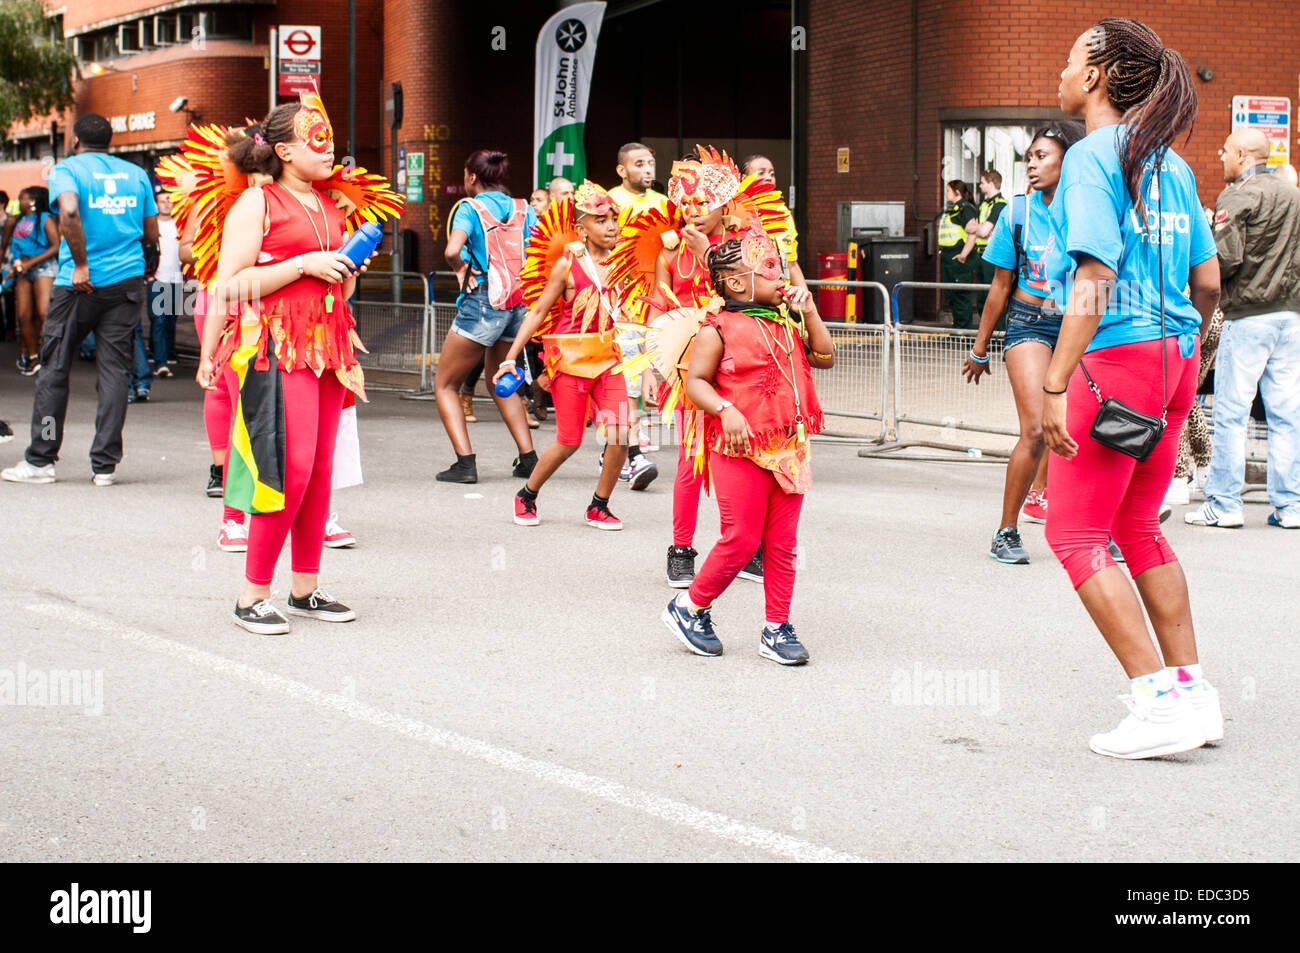 Londra, UK- 24 Agosto 2014: carnevale di Notting Hill, giornata per i bambini. Un gruppo di ragazzi a ballare come parte della sfilata. Foto Stock